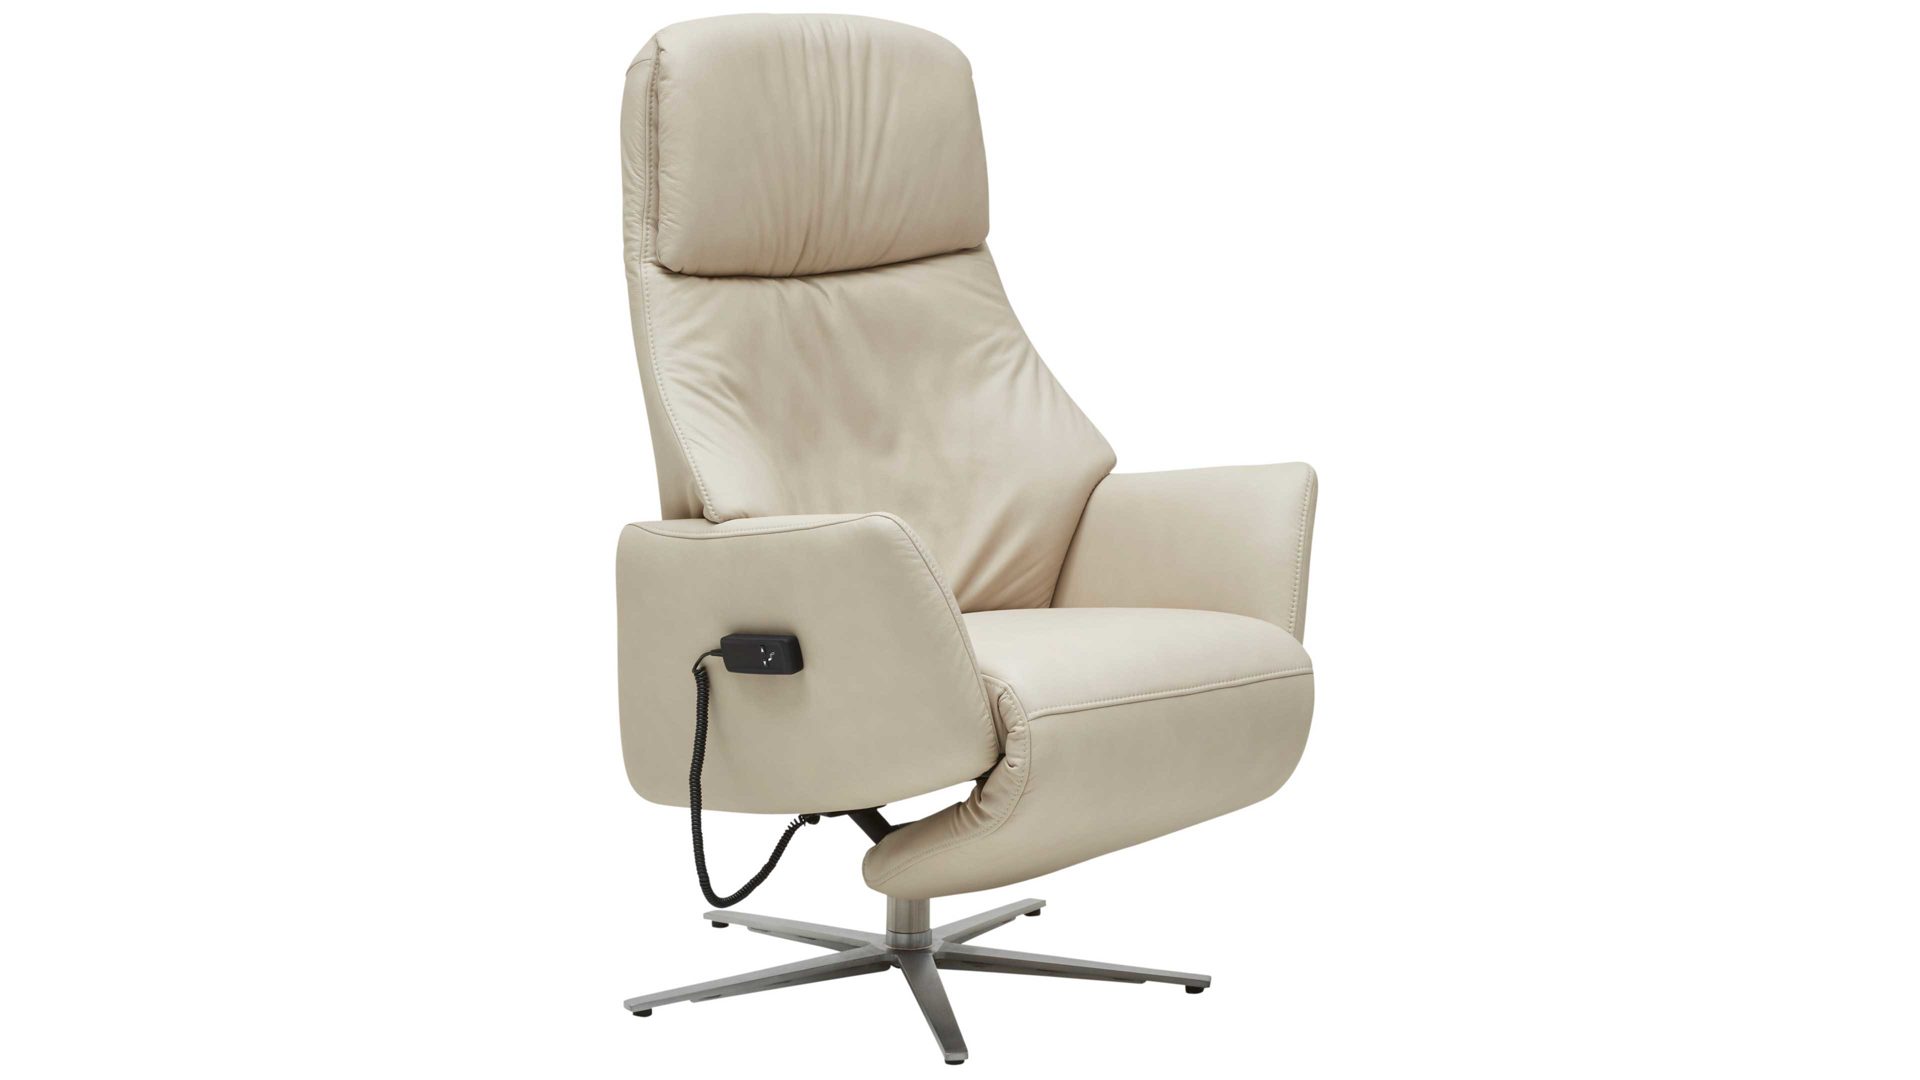 Serie Sessel 4520 47U42, Interliving Sessel & marmorfarbenes Longlife-Leder -